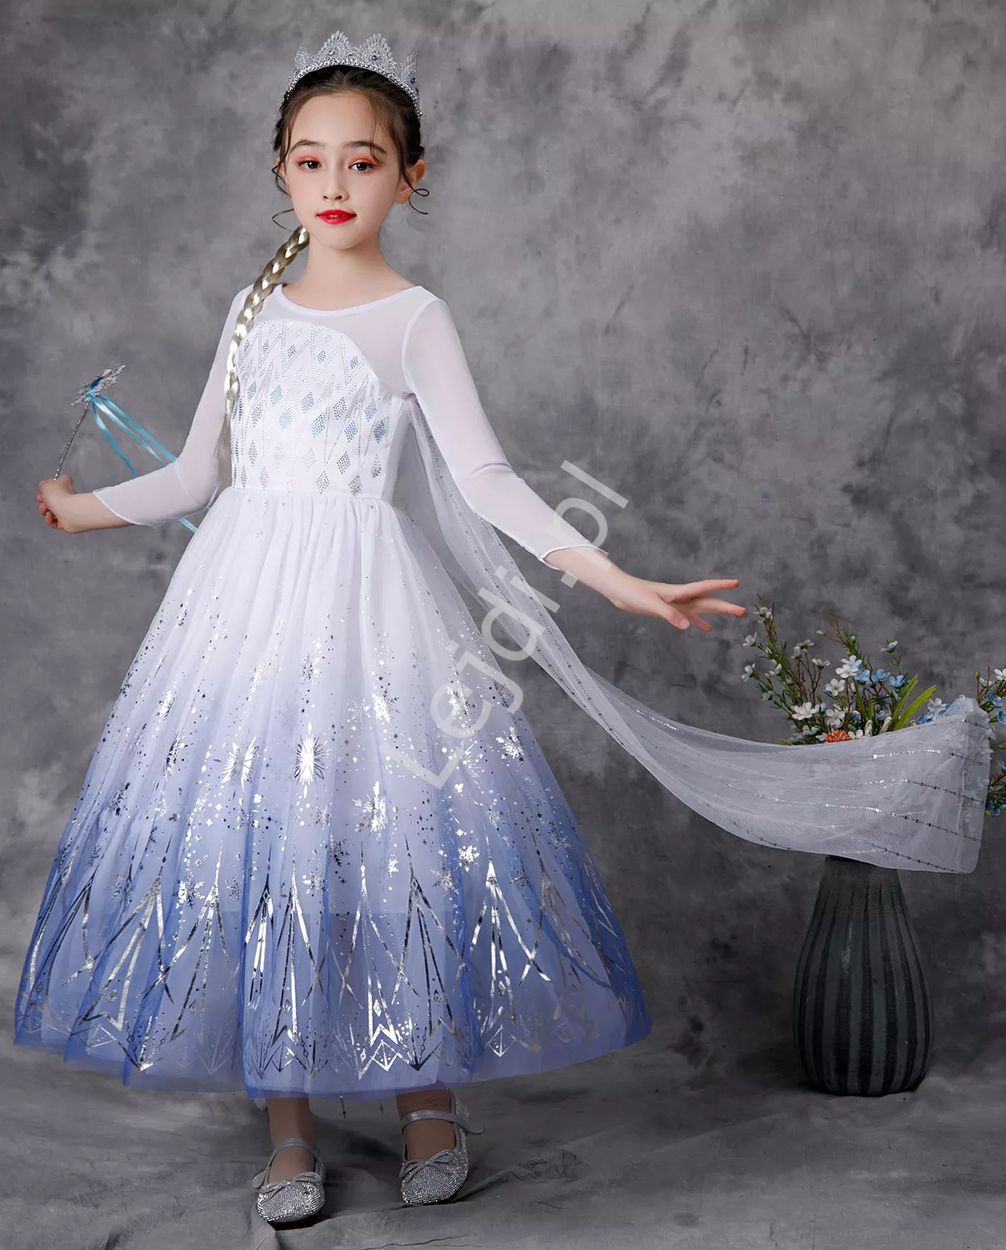  Dziecięca sukienka Elsa z Krainy Lodu, karnawałowa sukienka z bajki frozen